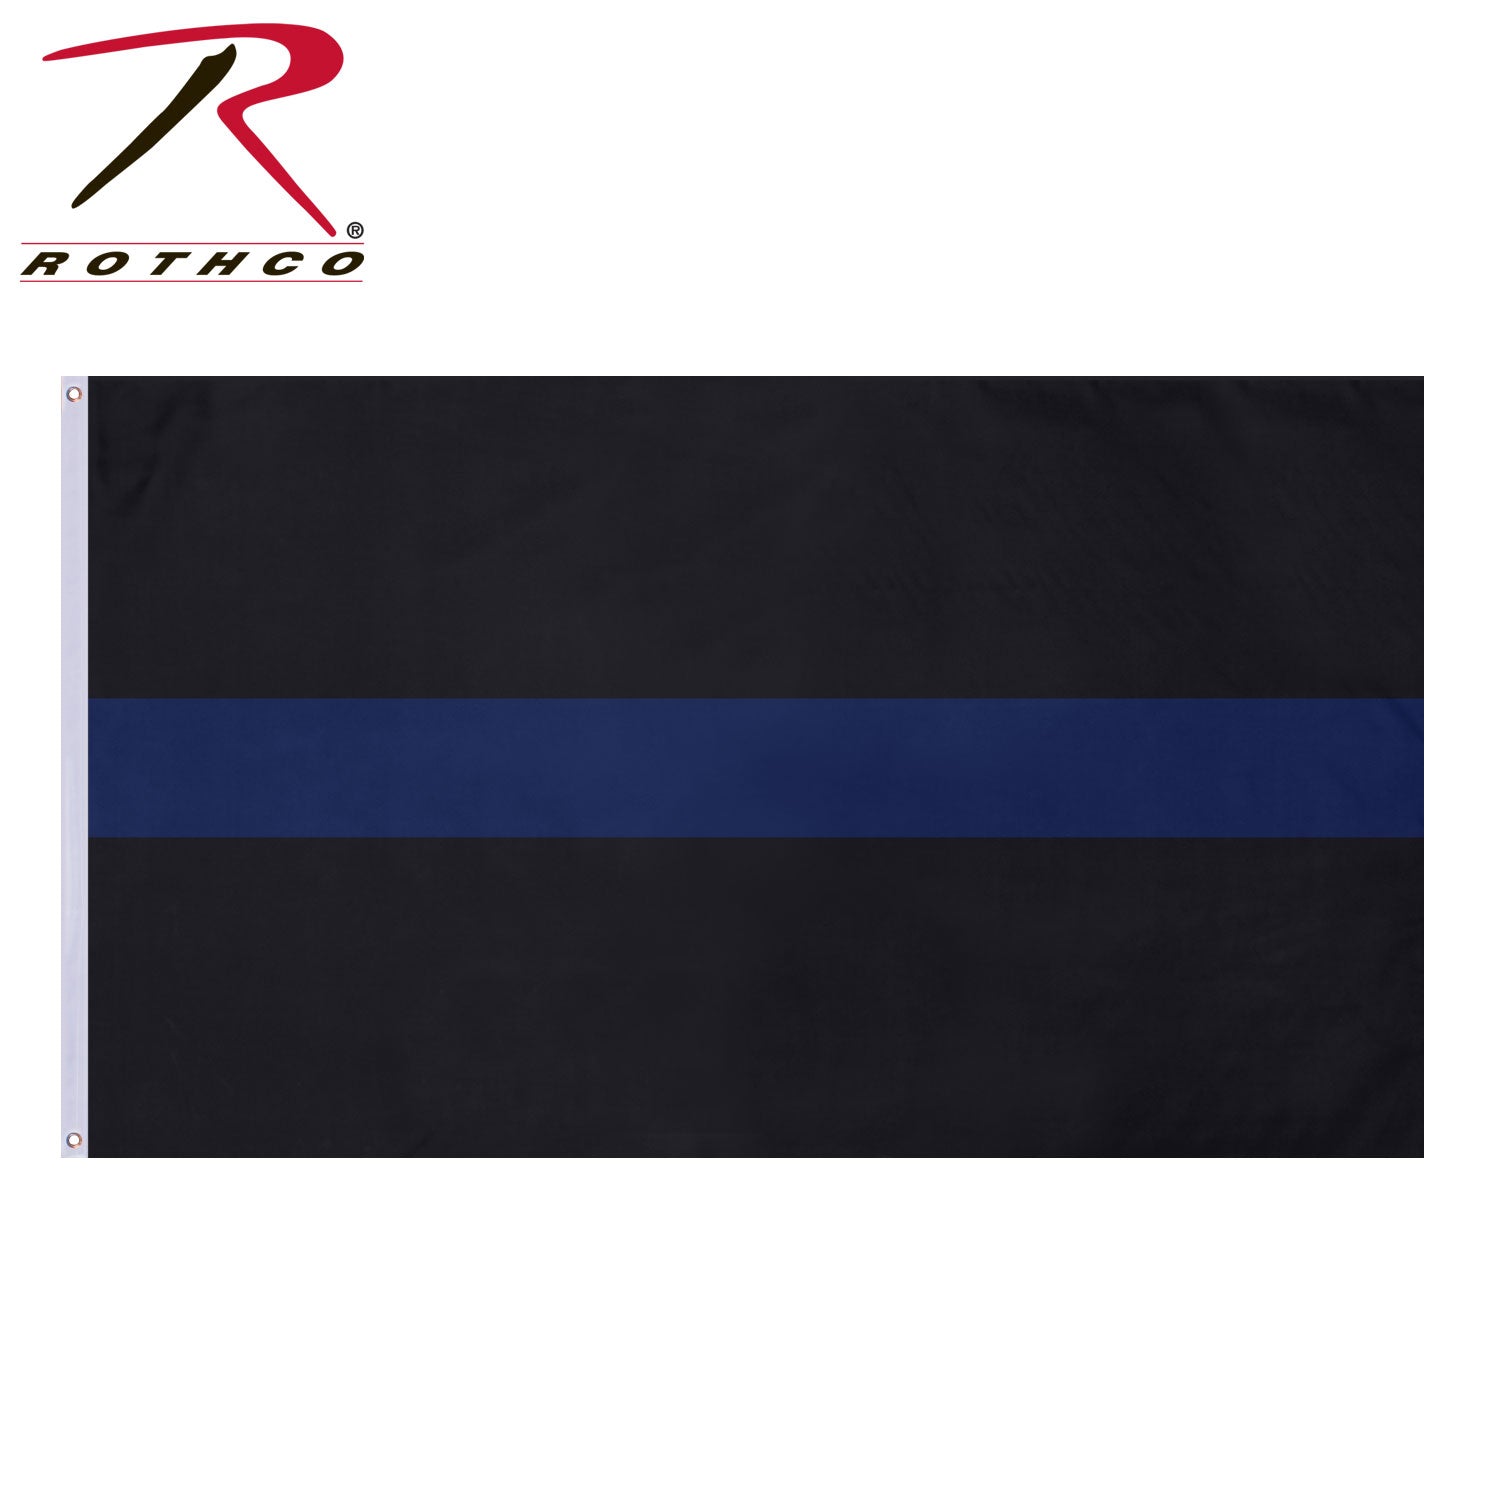 Rothco Thin Blue Line Flag 3x5